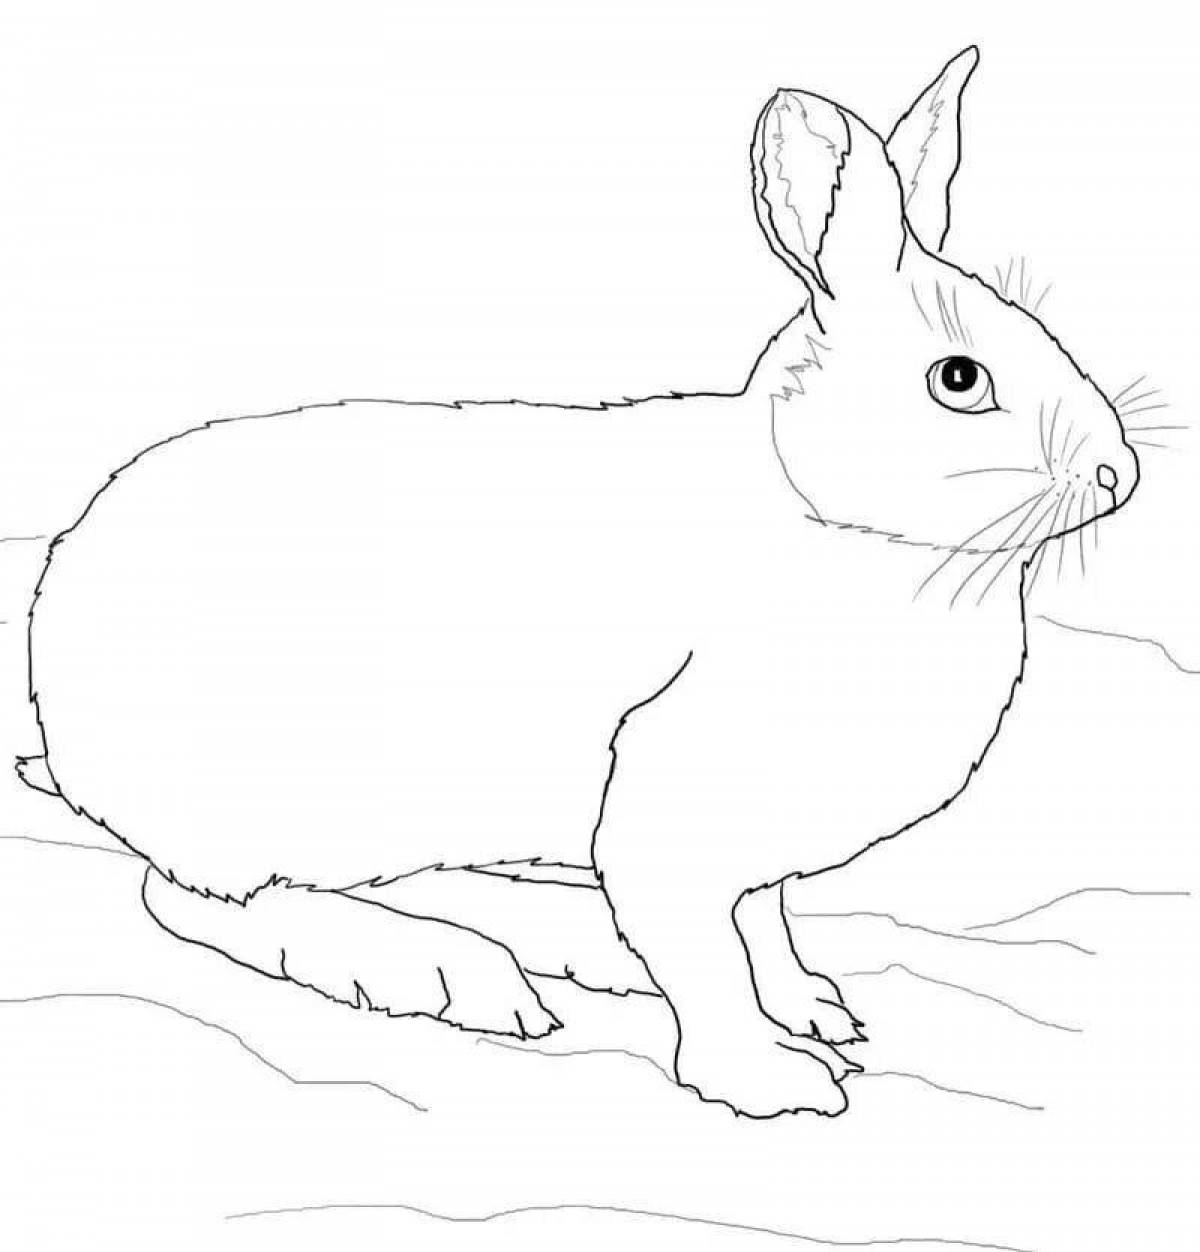 Joyful hare in winter